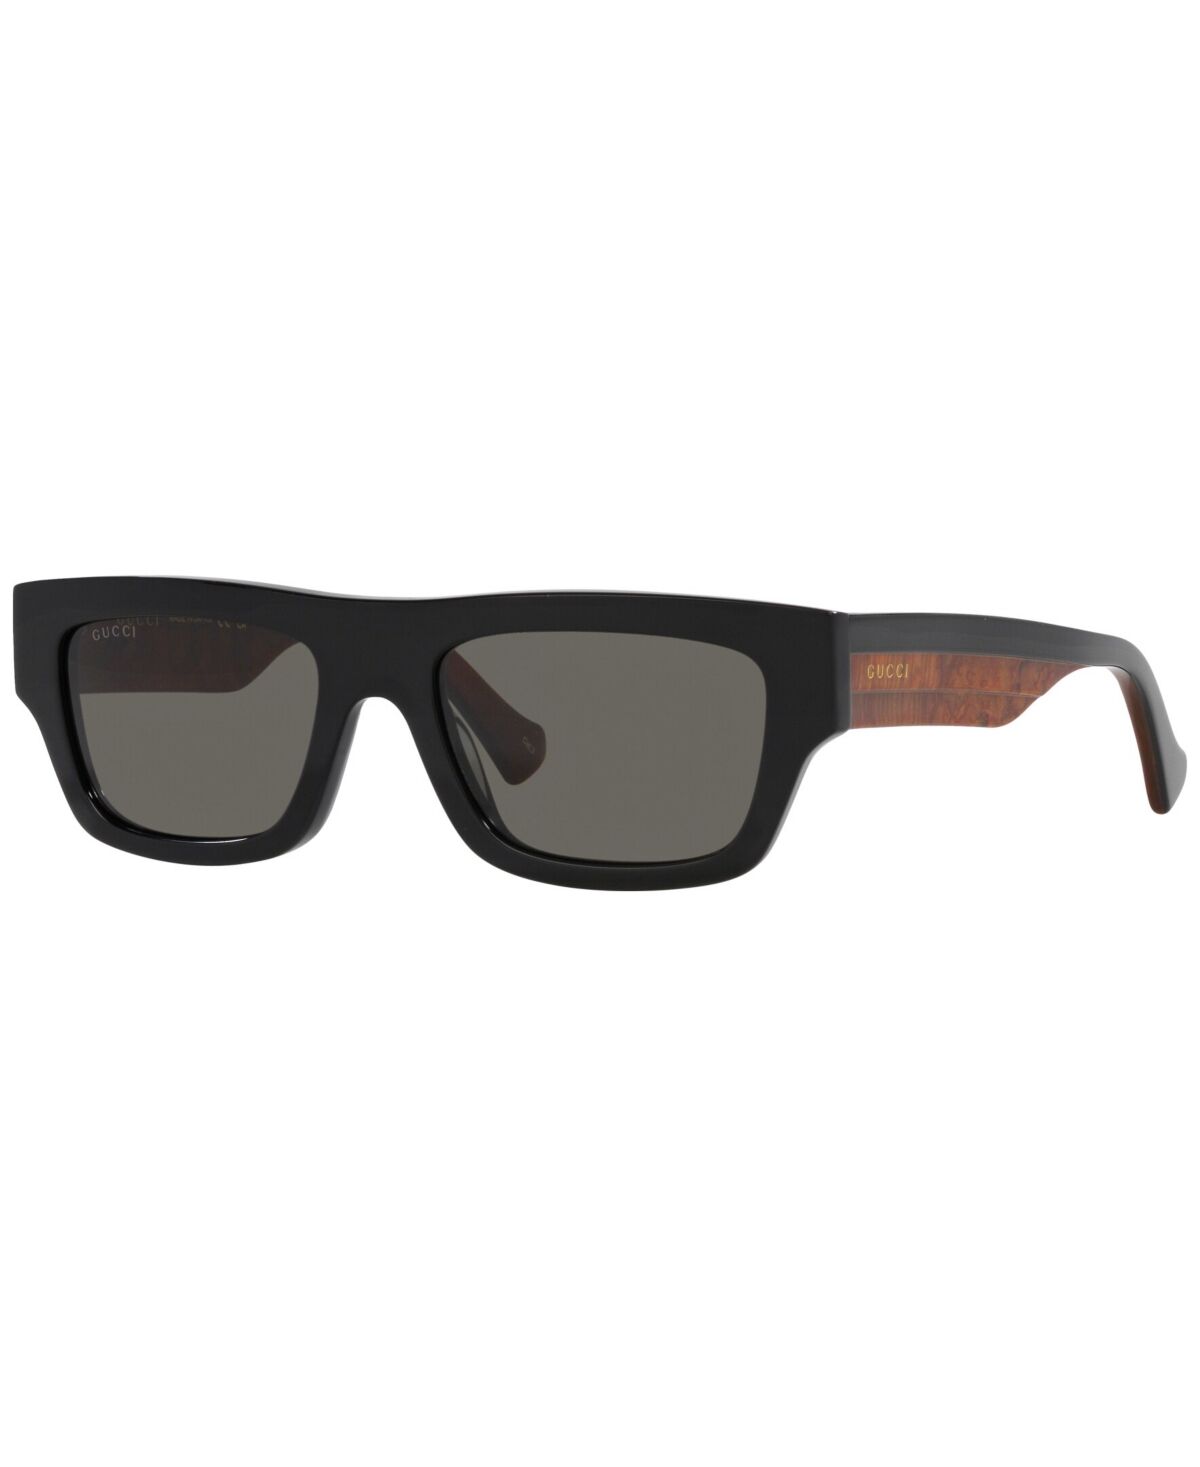 Gucci Men's Sunglasses, GG1301S - Black